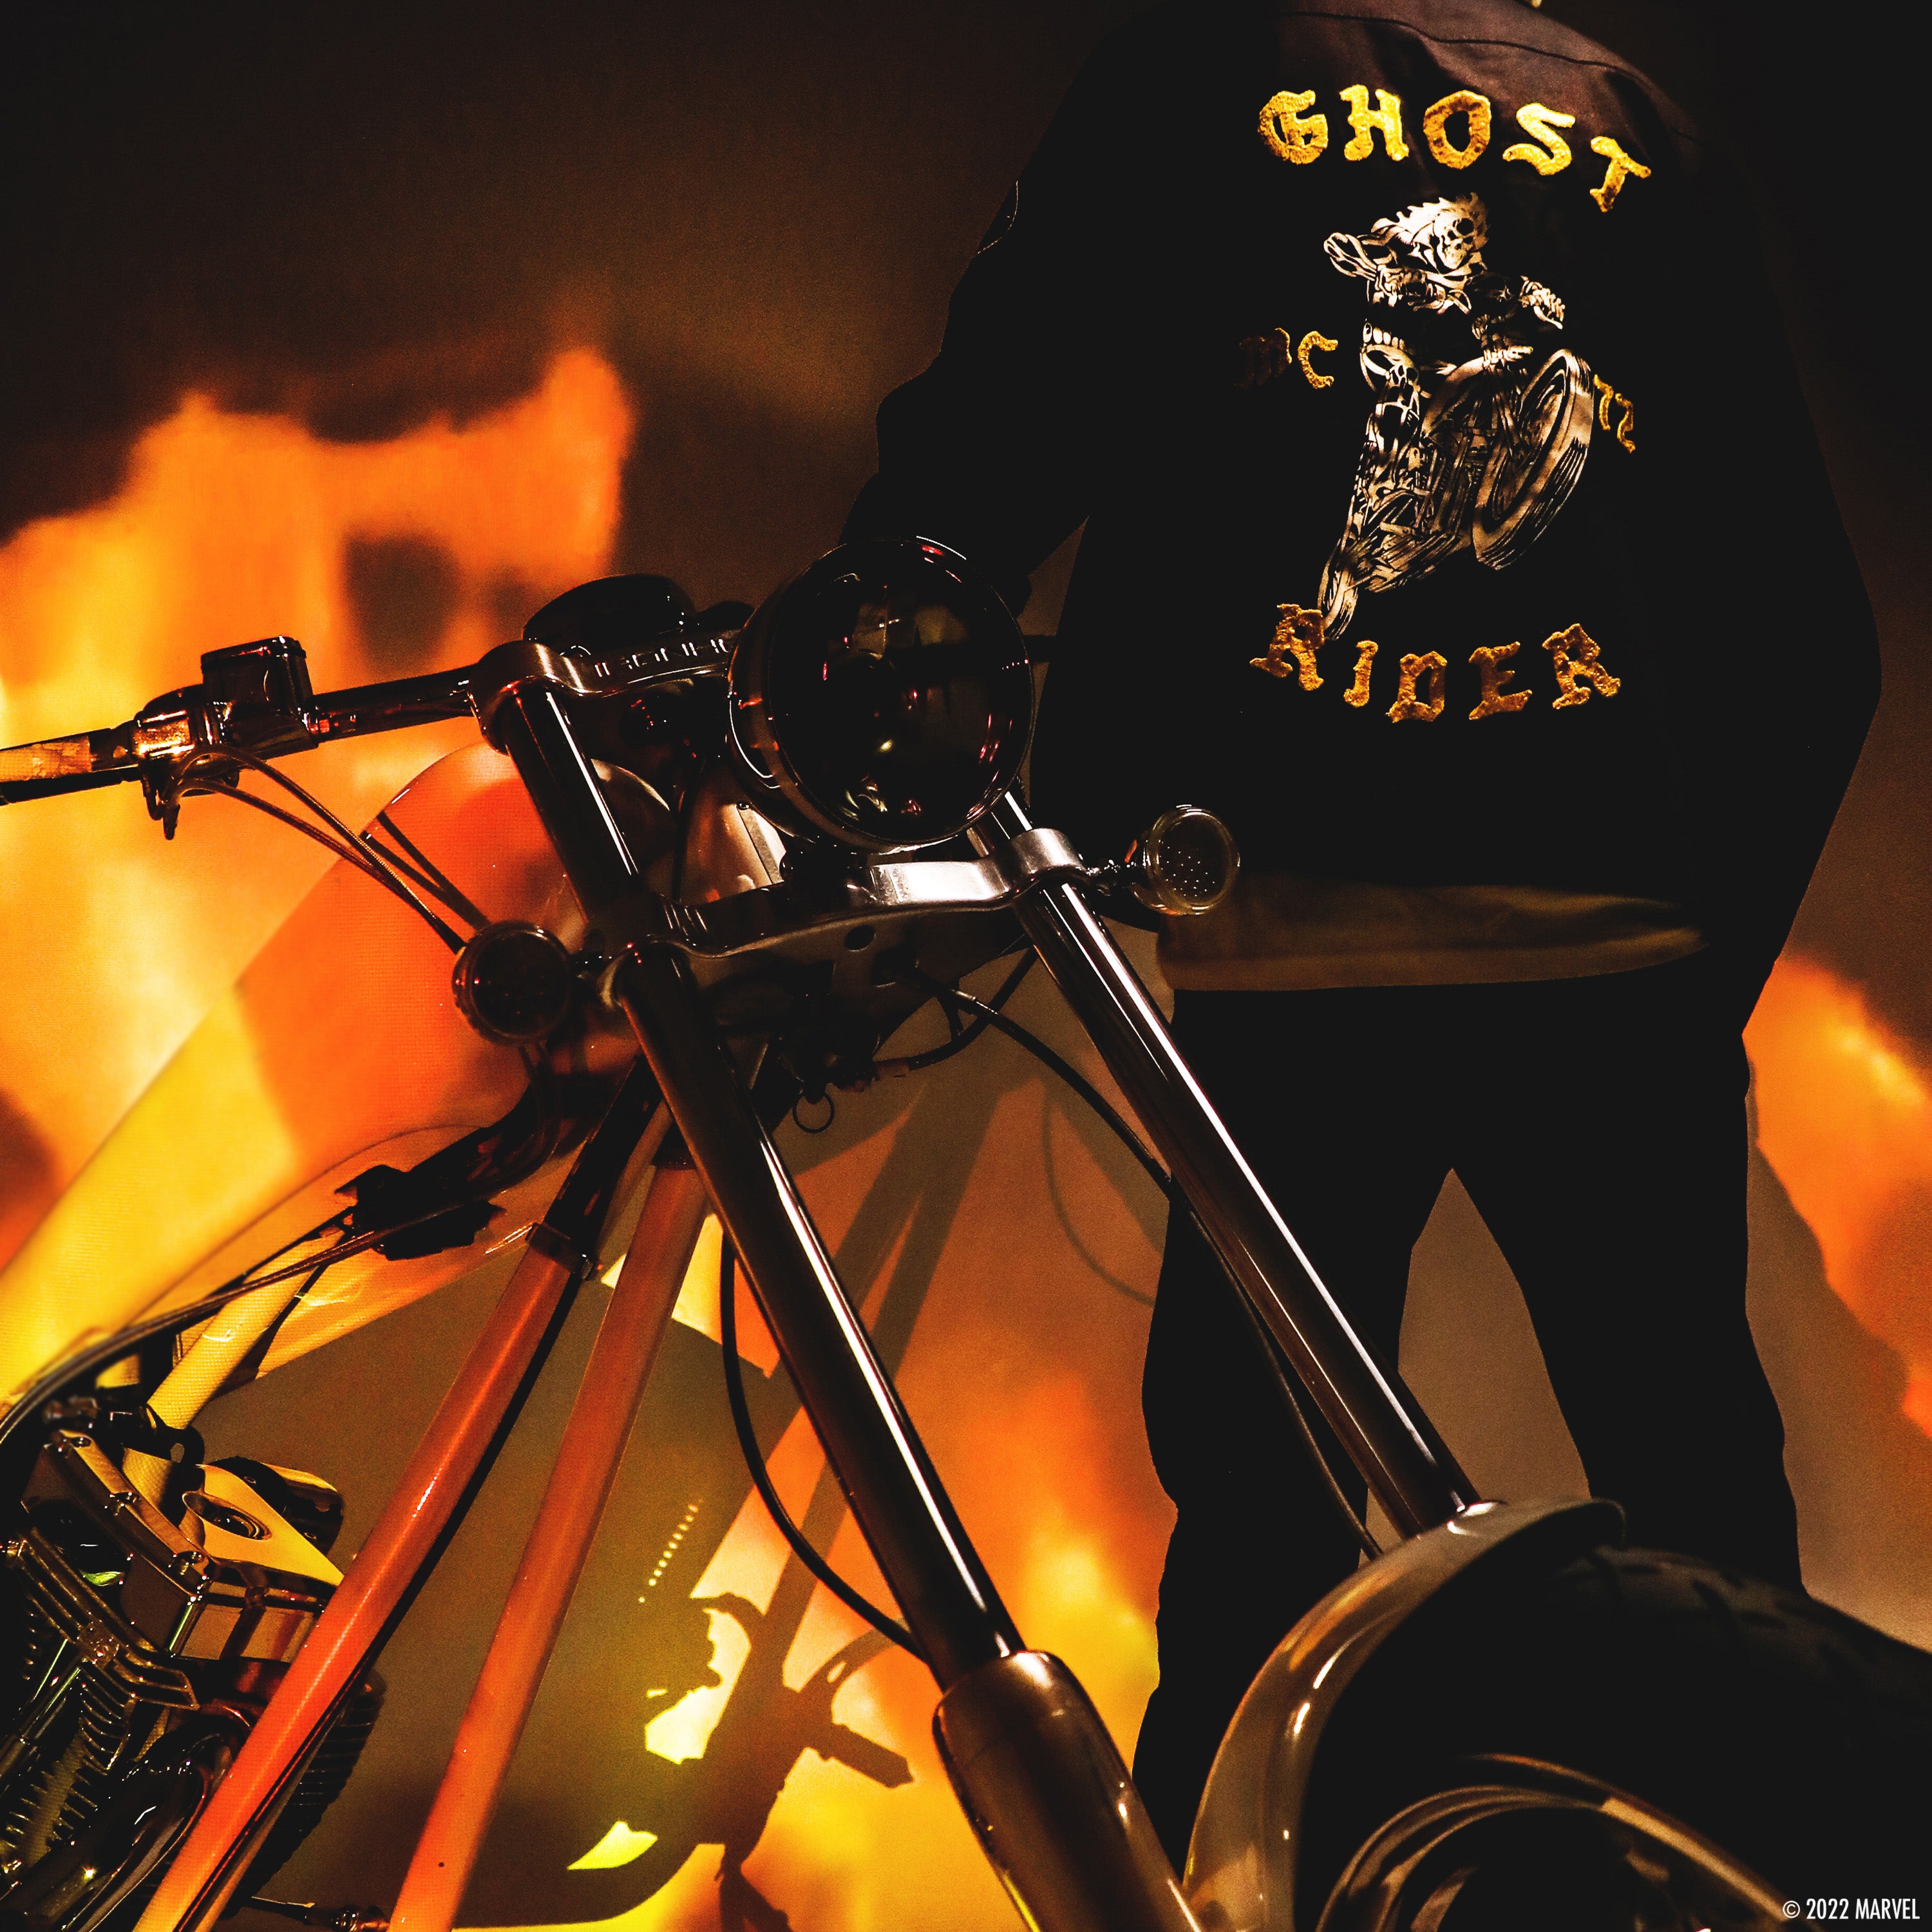 Ghost Rider Gasoline Jacket